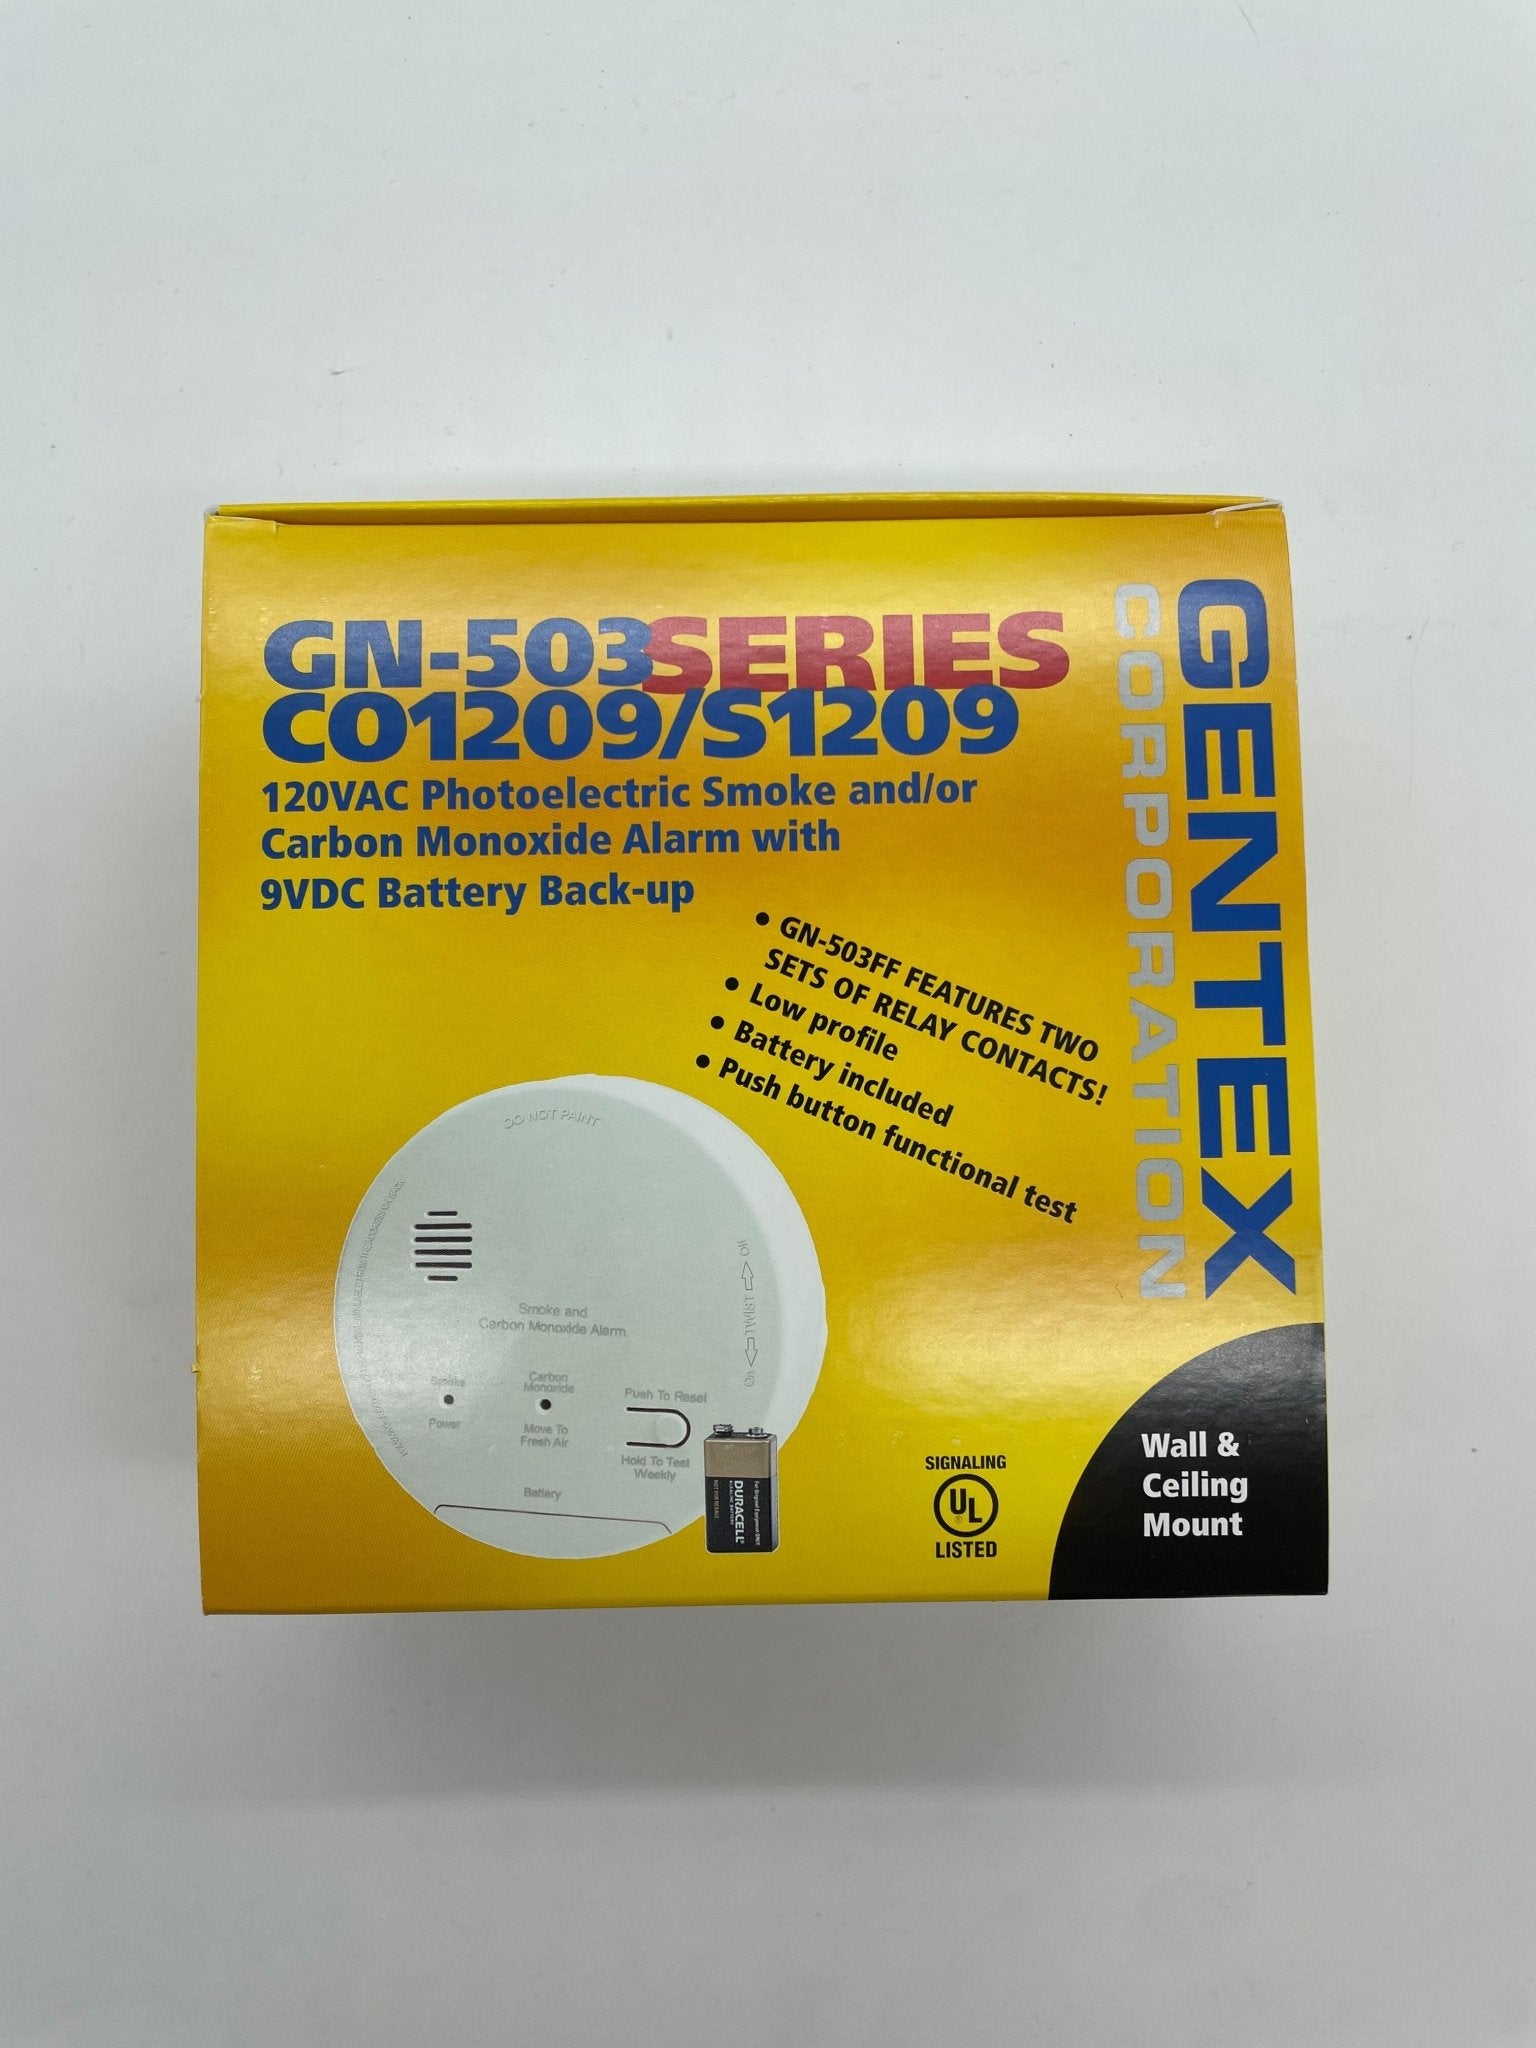 Gentex GN-503 - The Fire Alarm Supplier